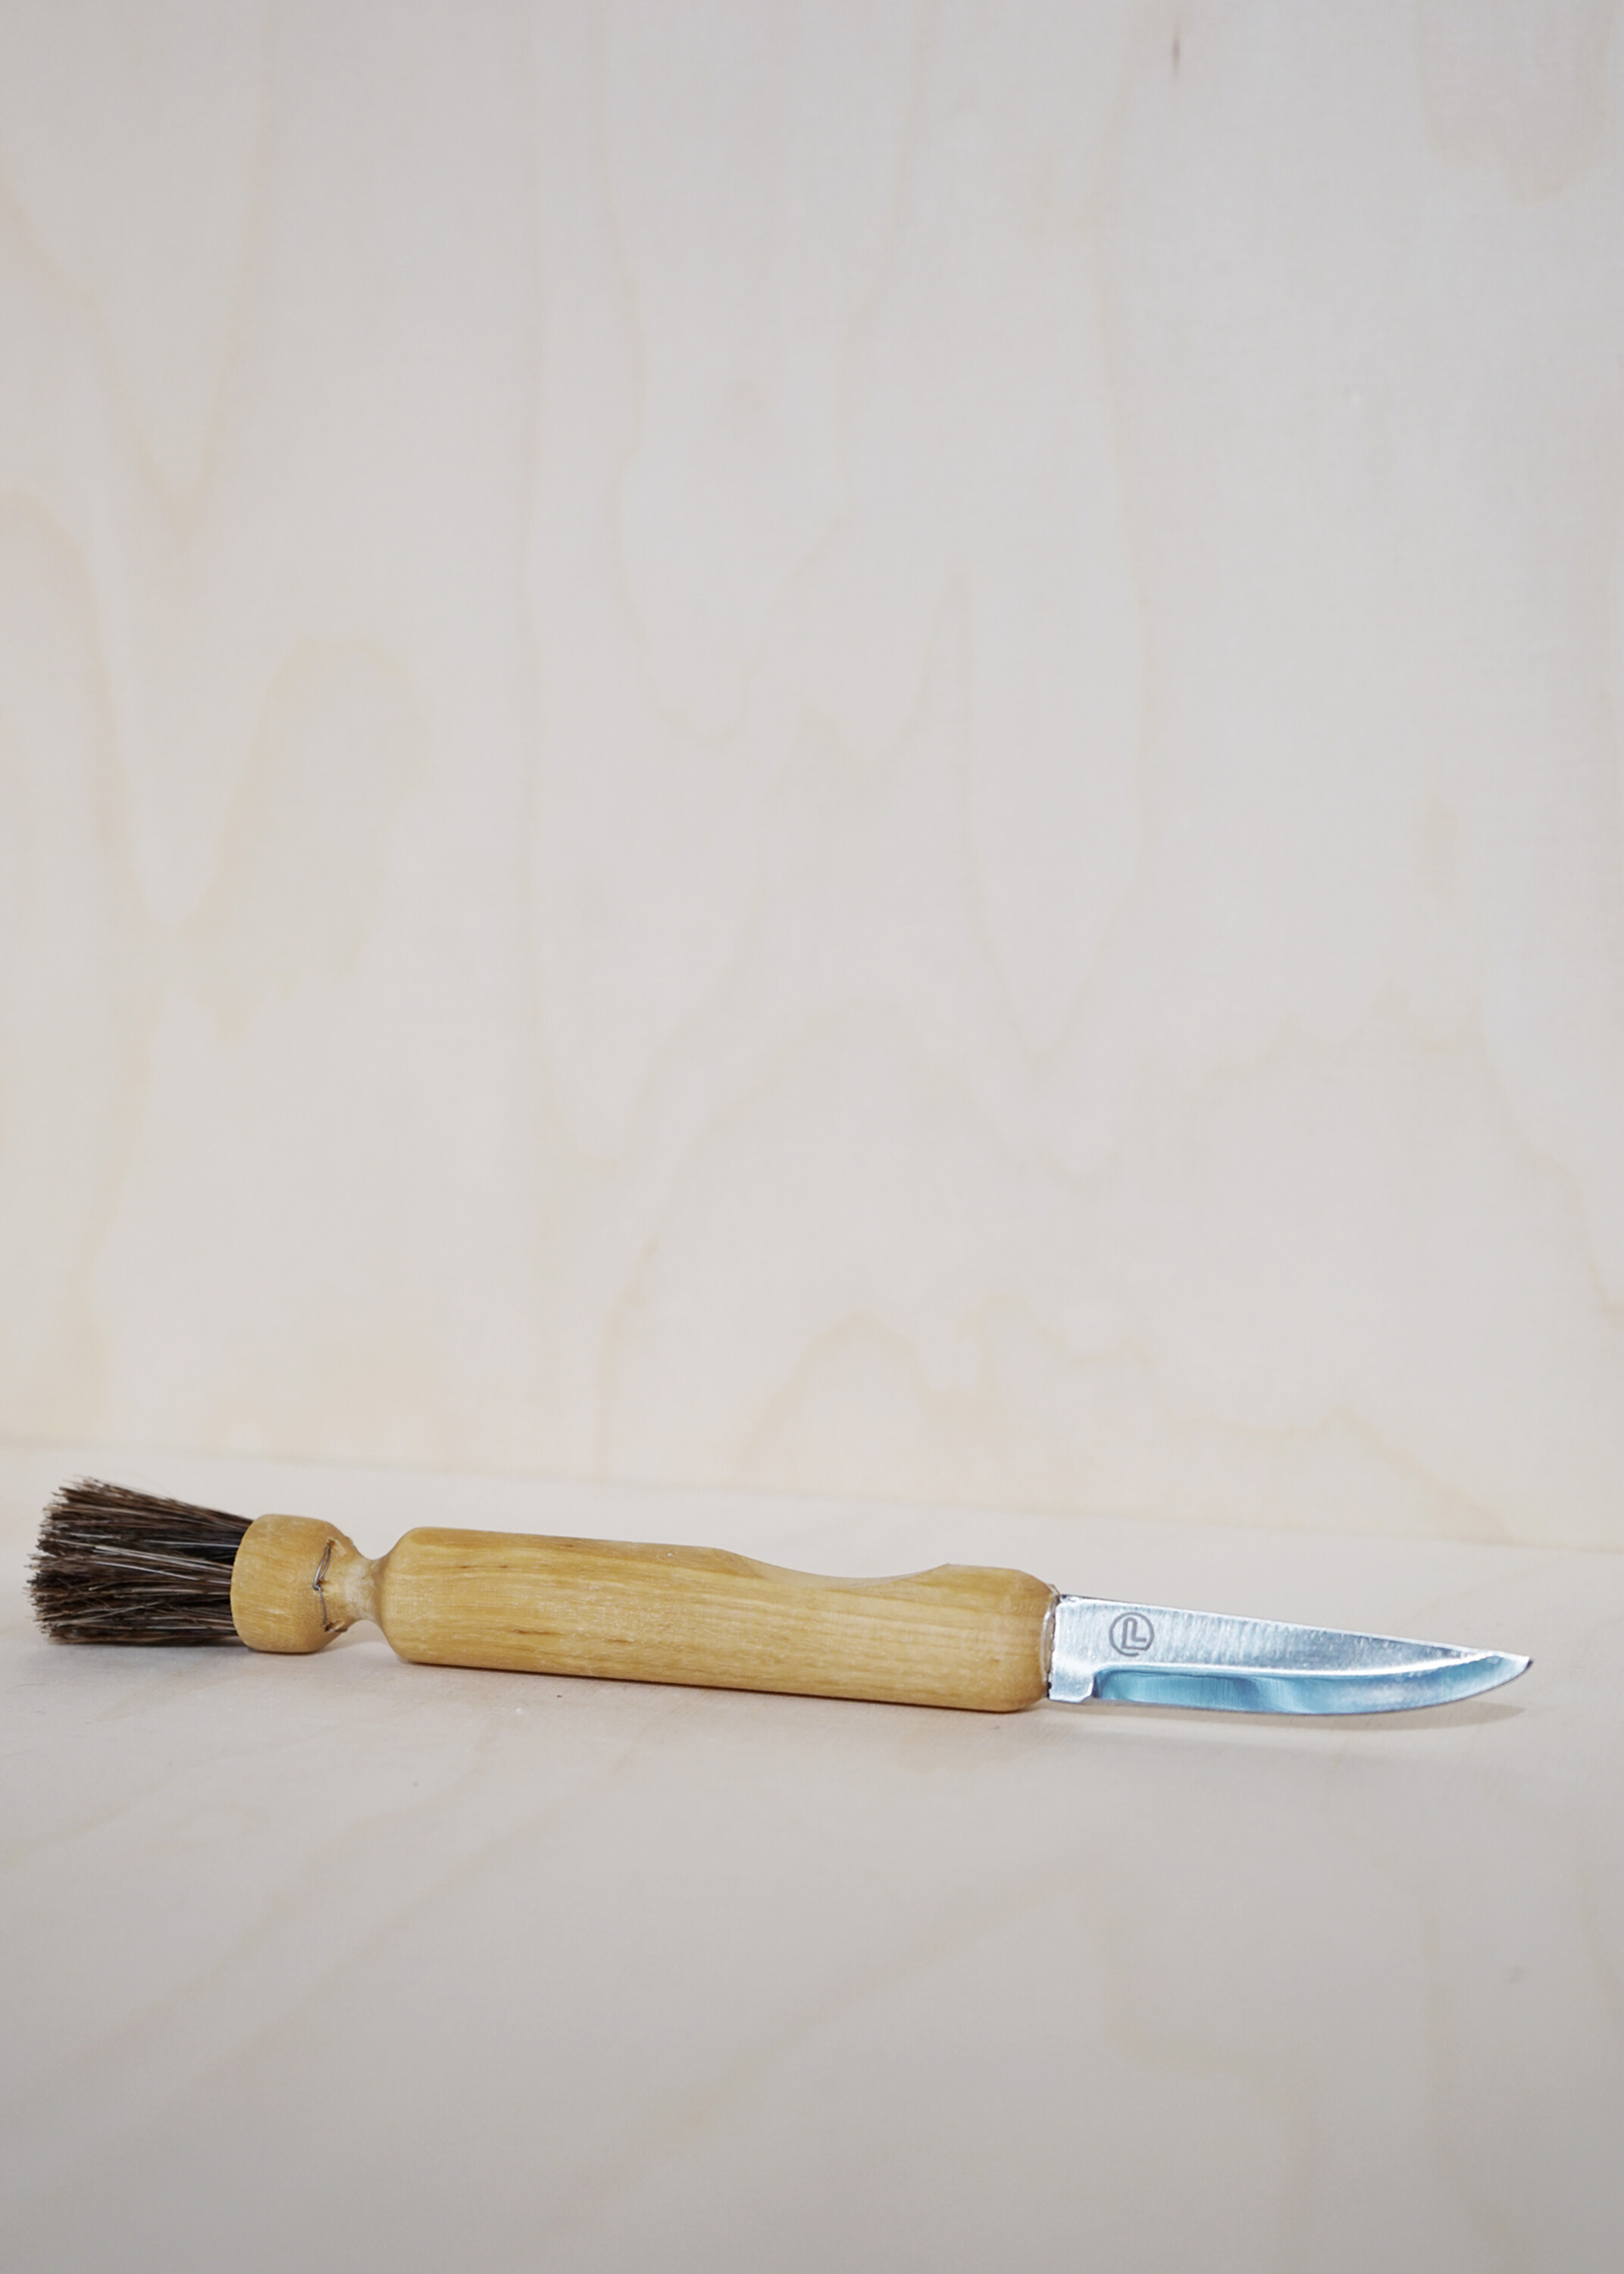 Iris hantverk svampkniv - bild på kniven